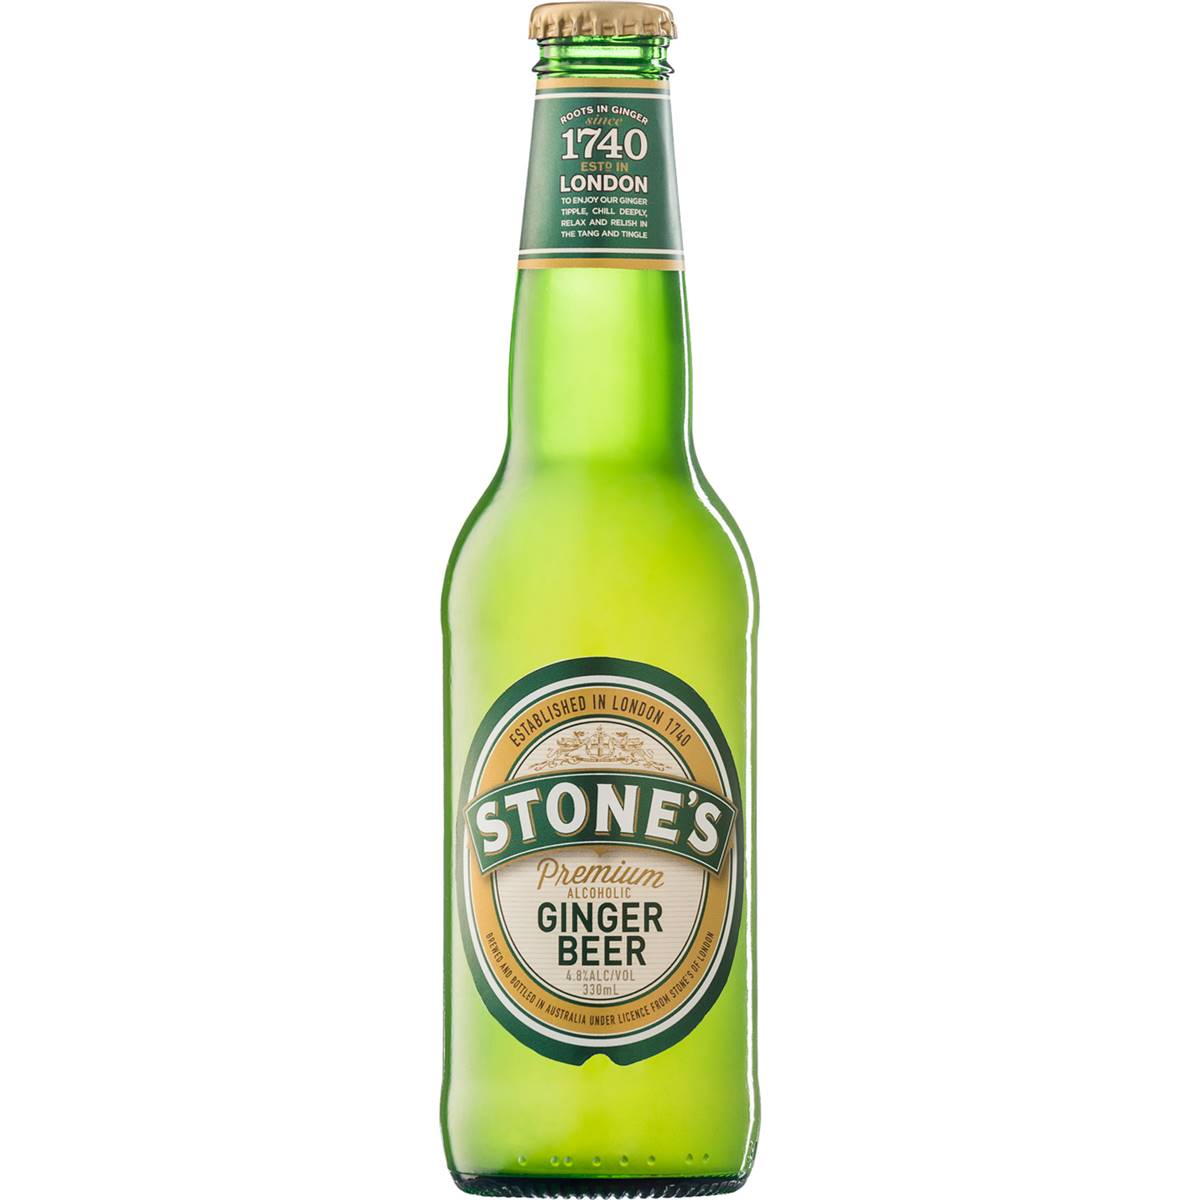 Stone's Ginger Beer Bottle